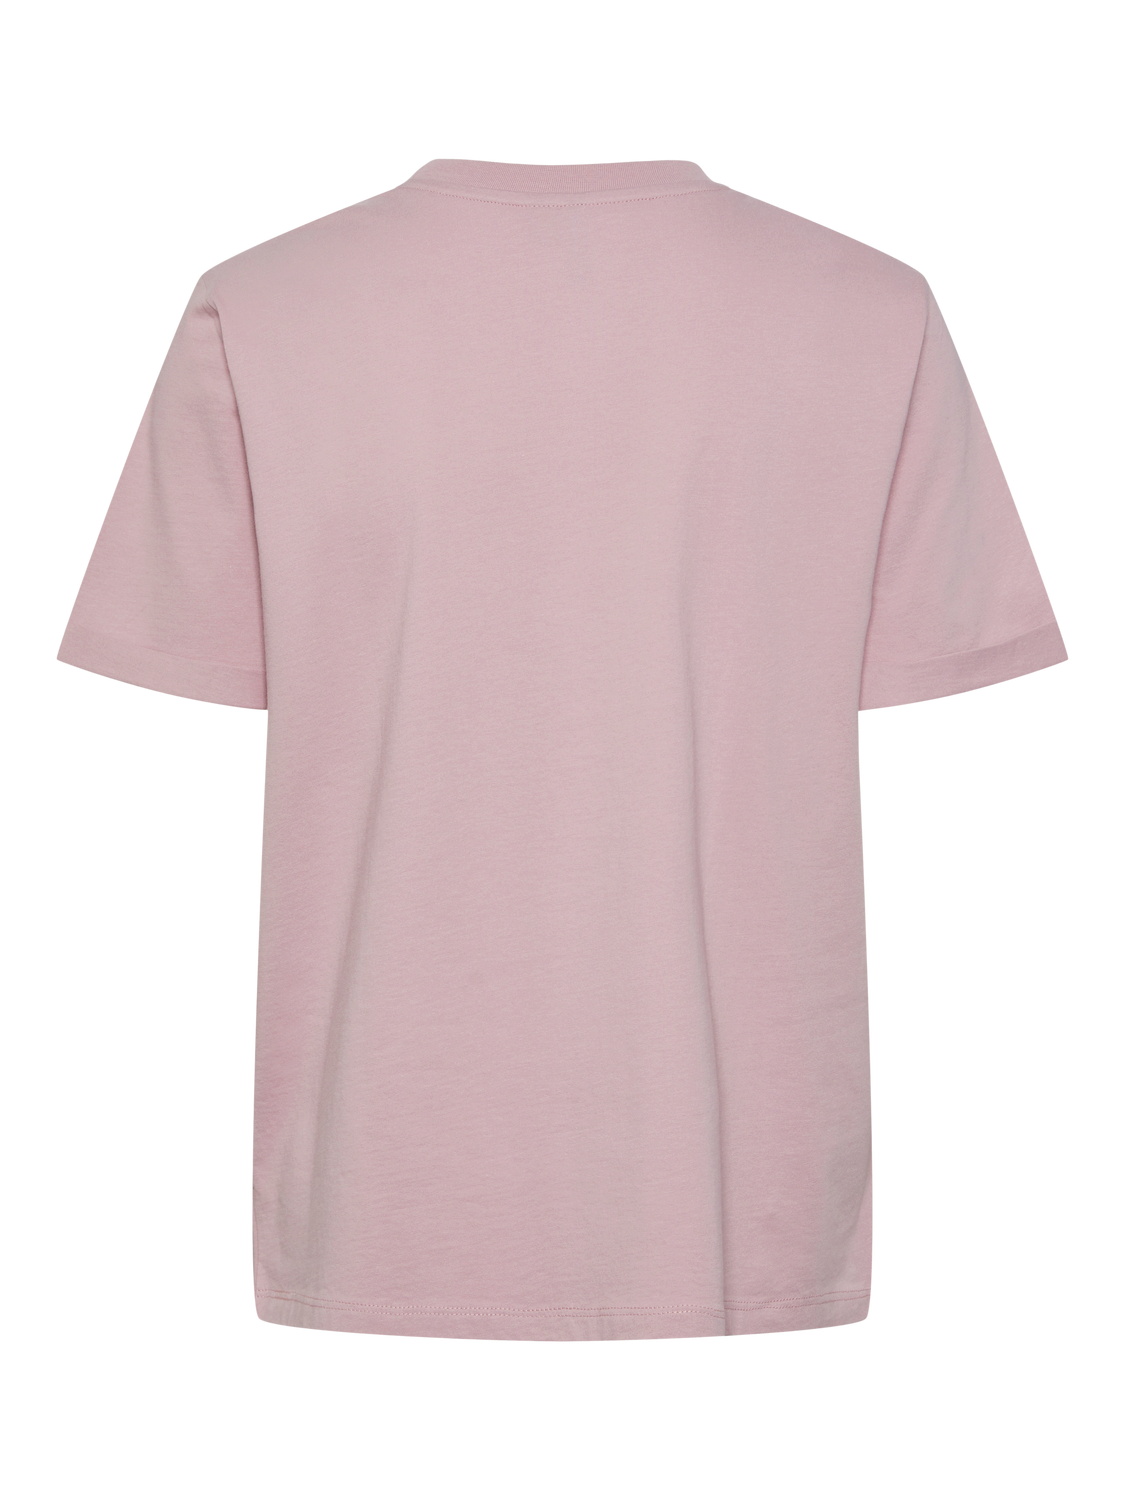 PCRIA T-Shirt - Dawn Pink